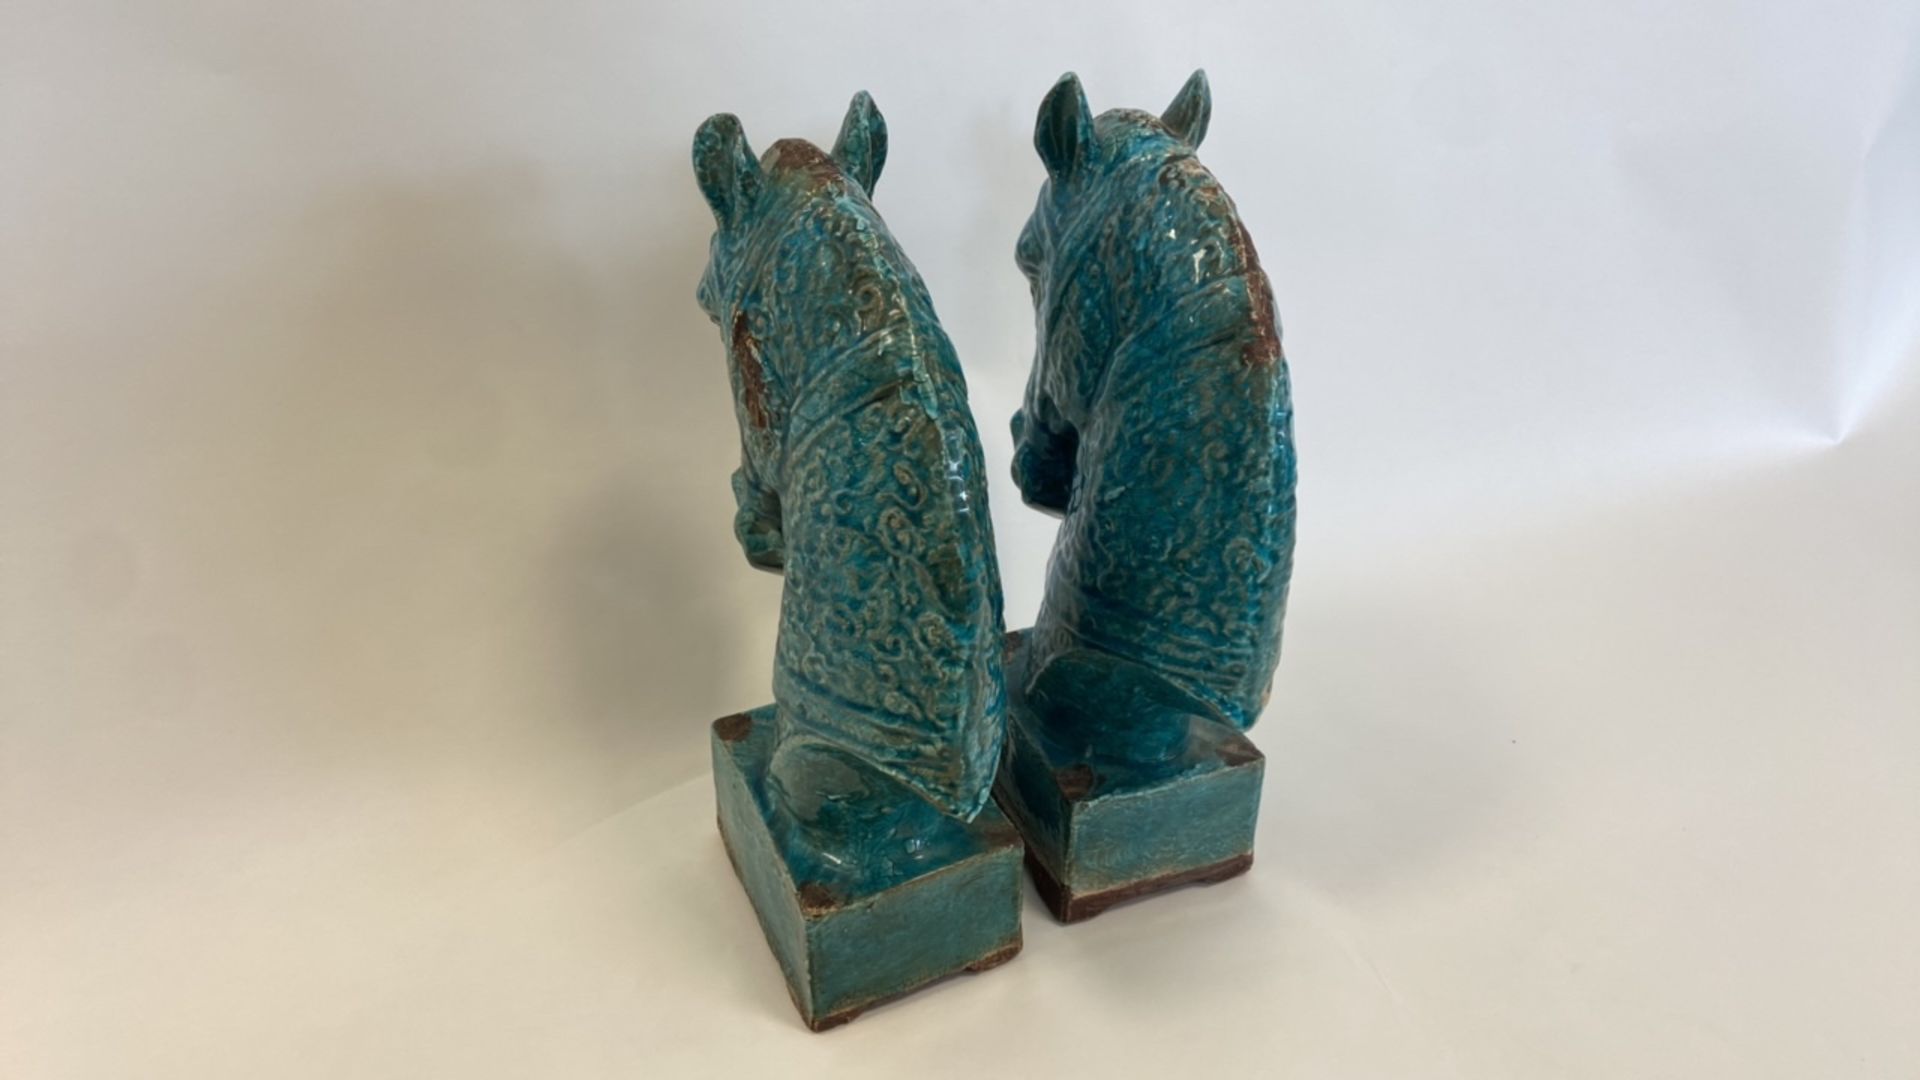 Antique, Handmade Ceramic Horse Statue - Image 5 of 8